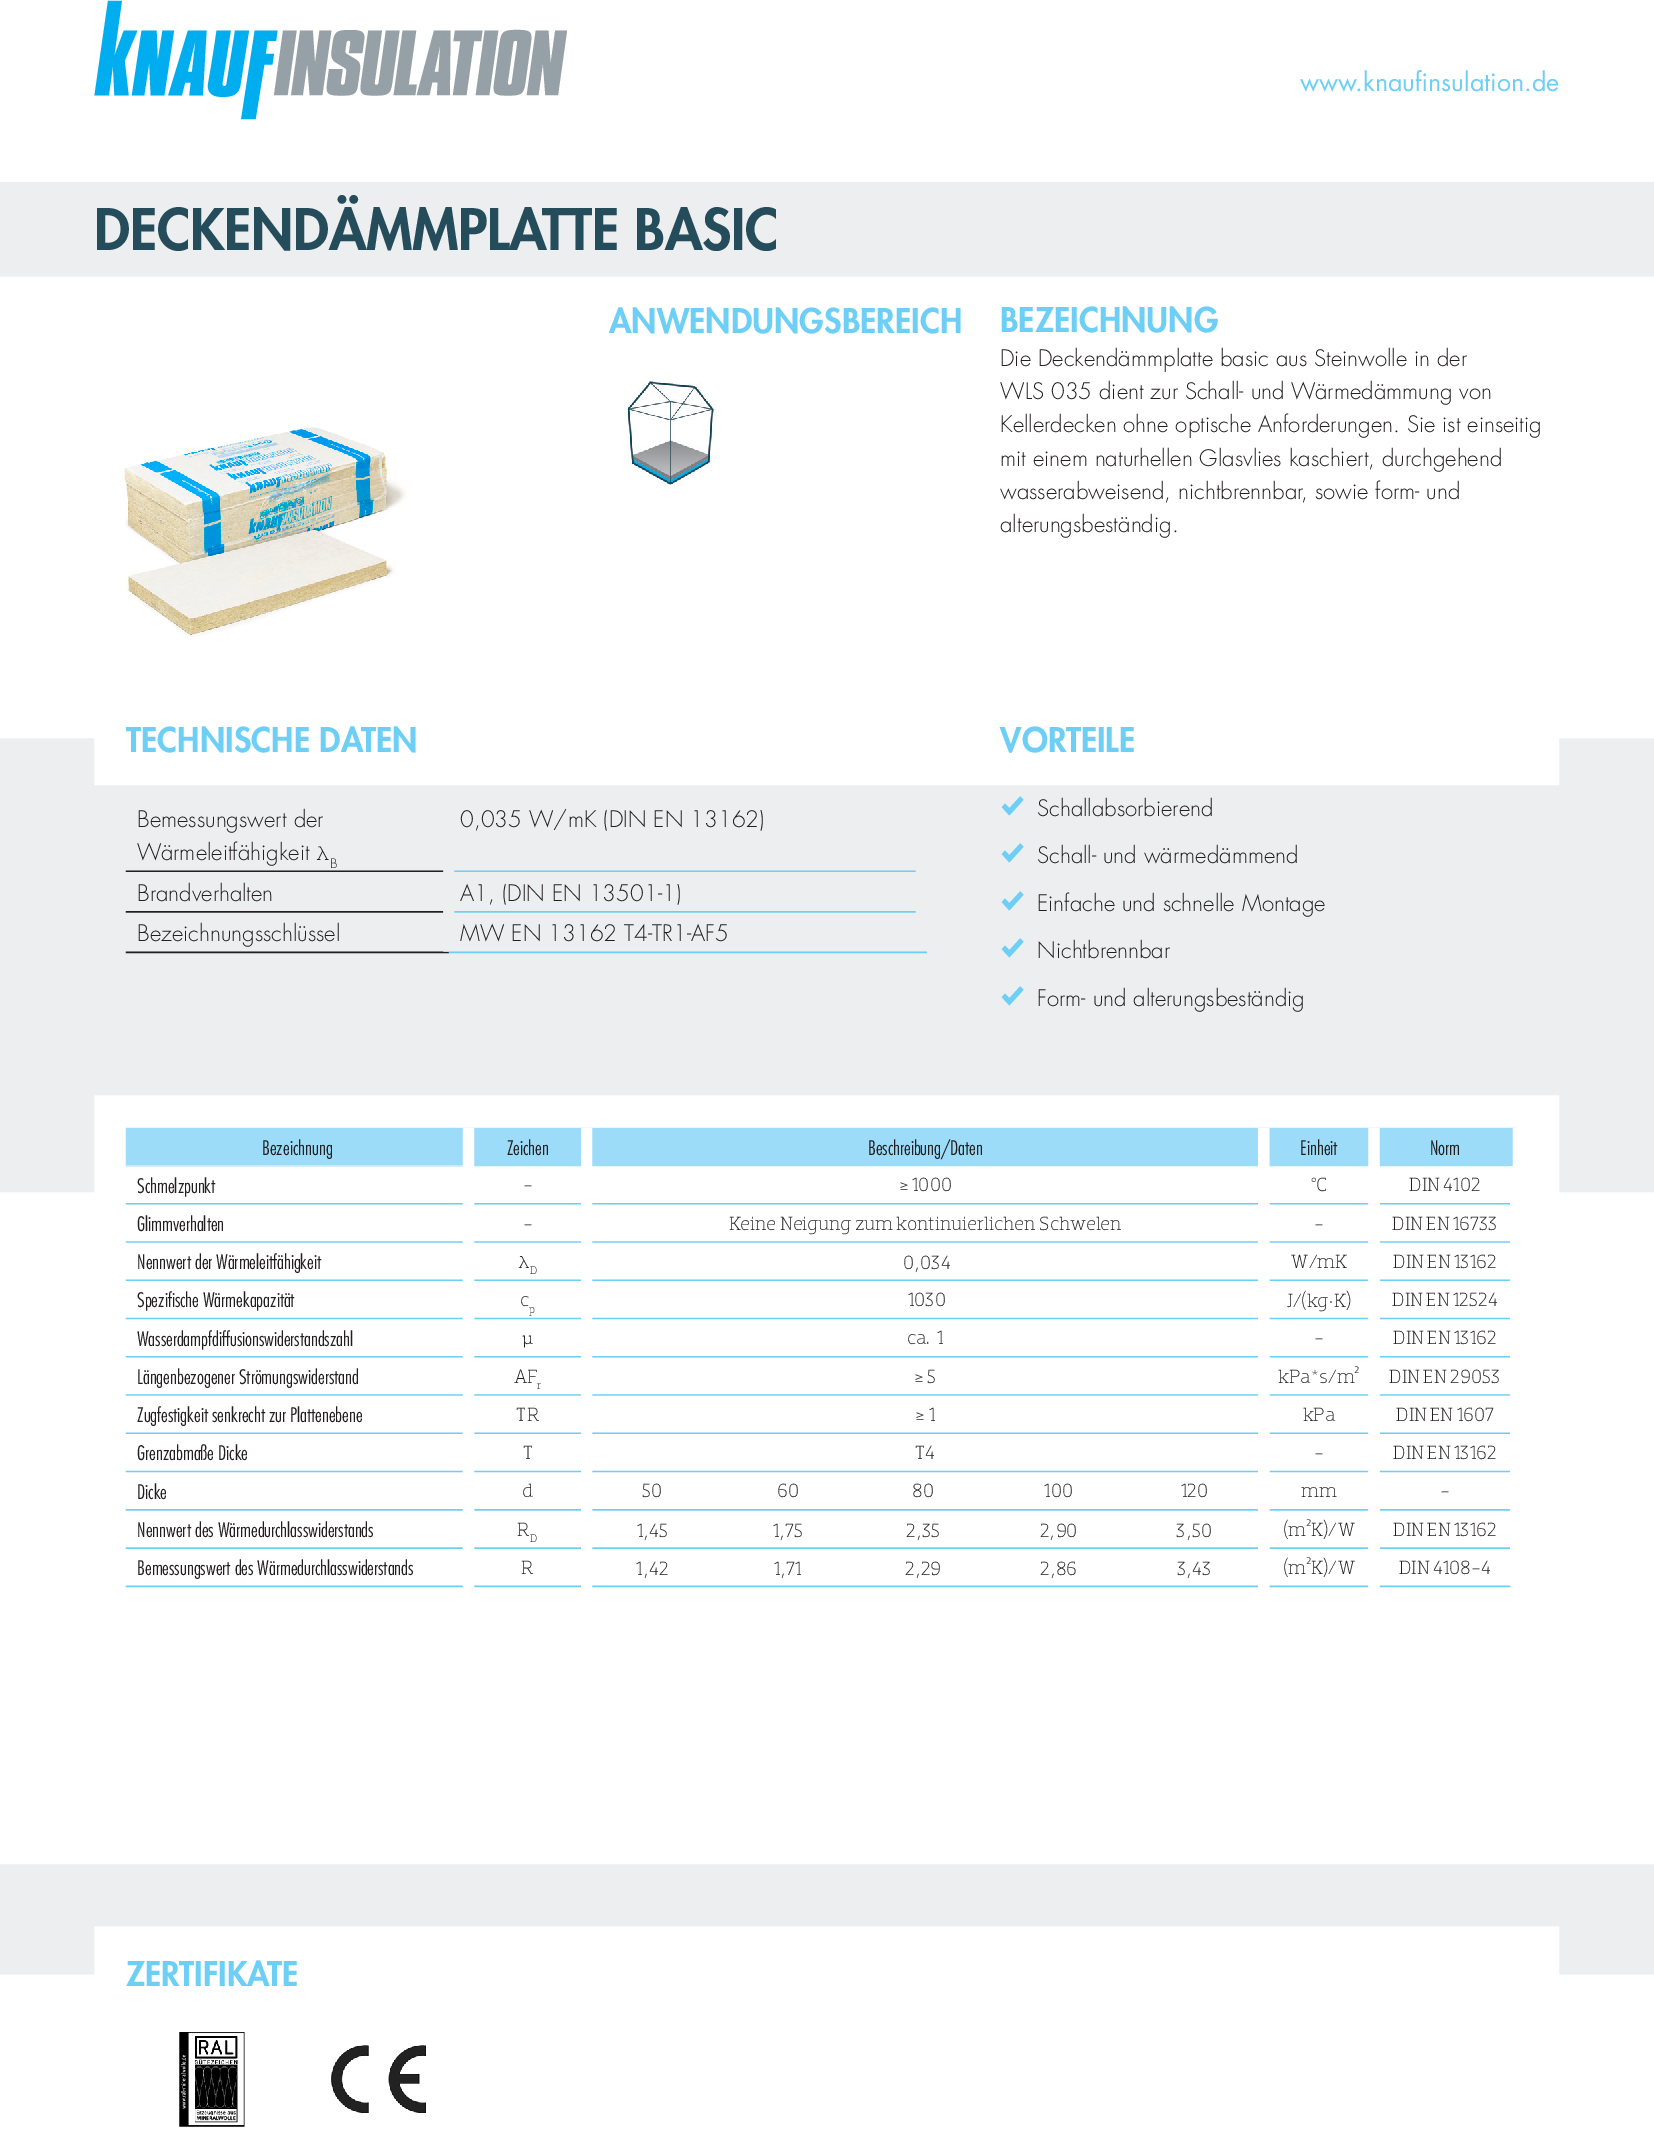 Datenblatt Knauf Insulation Deckendämmplatte Basic